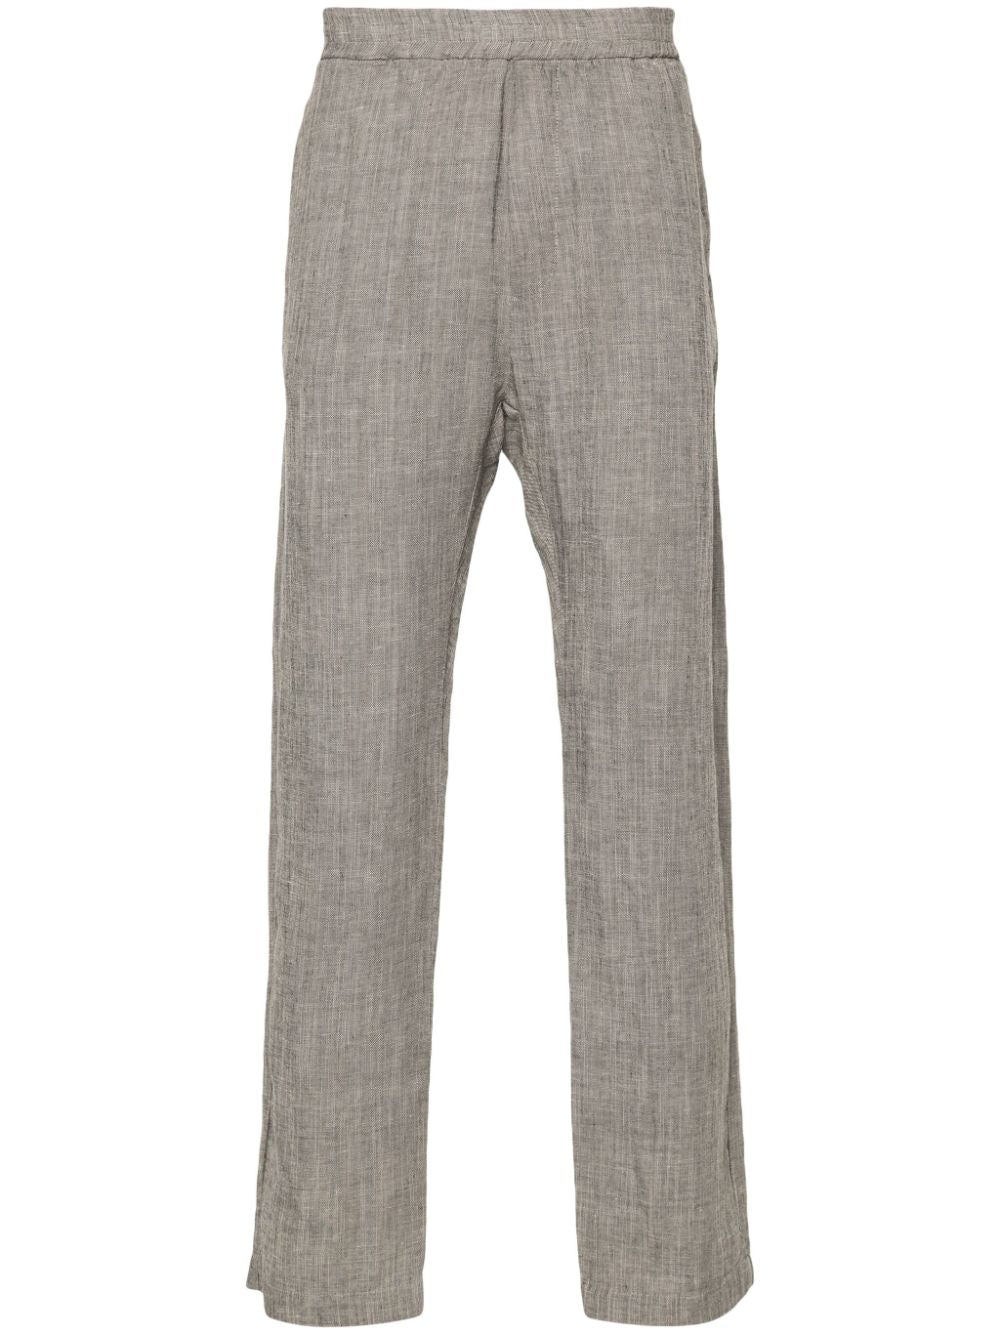 Pantalone grigio misto lino